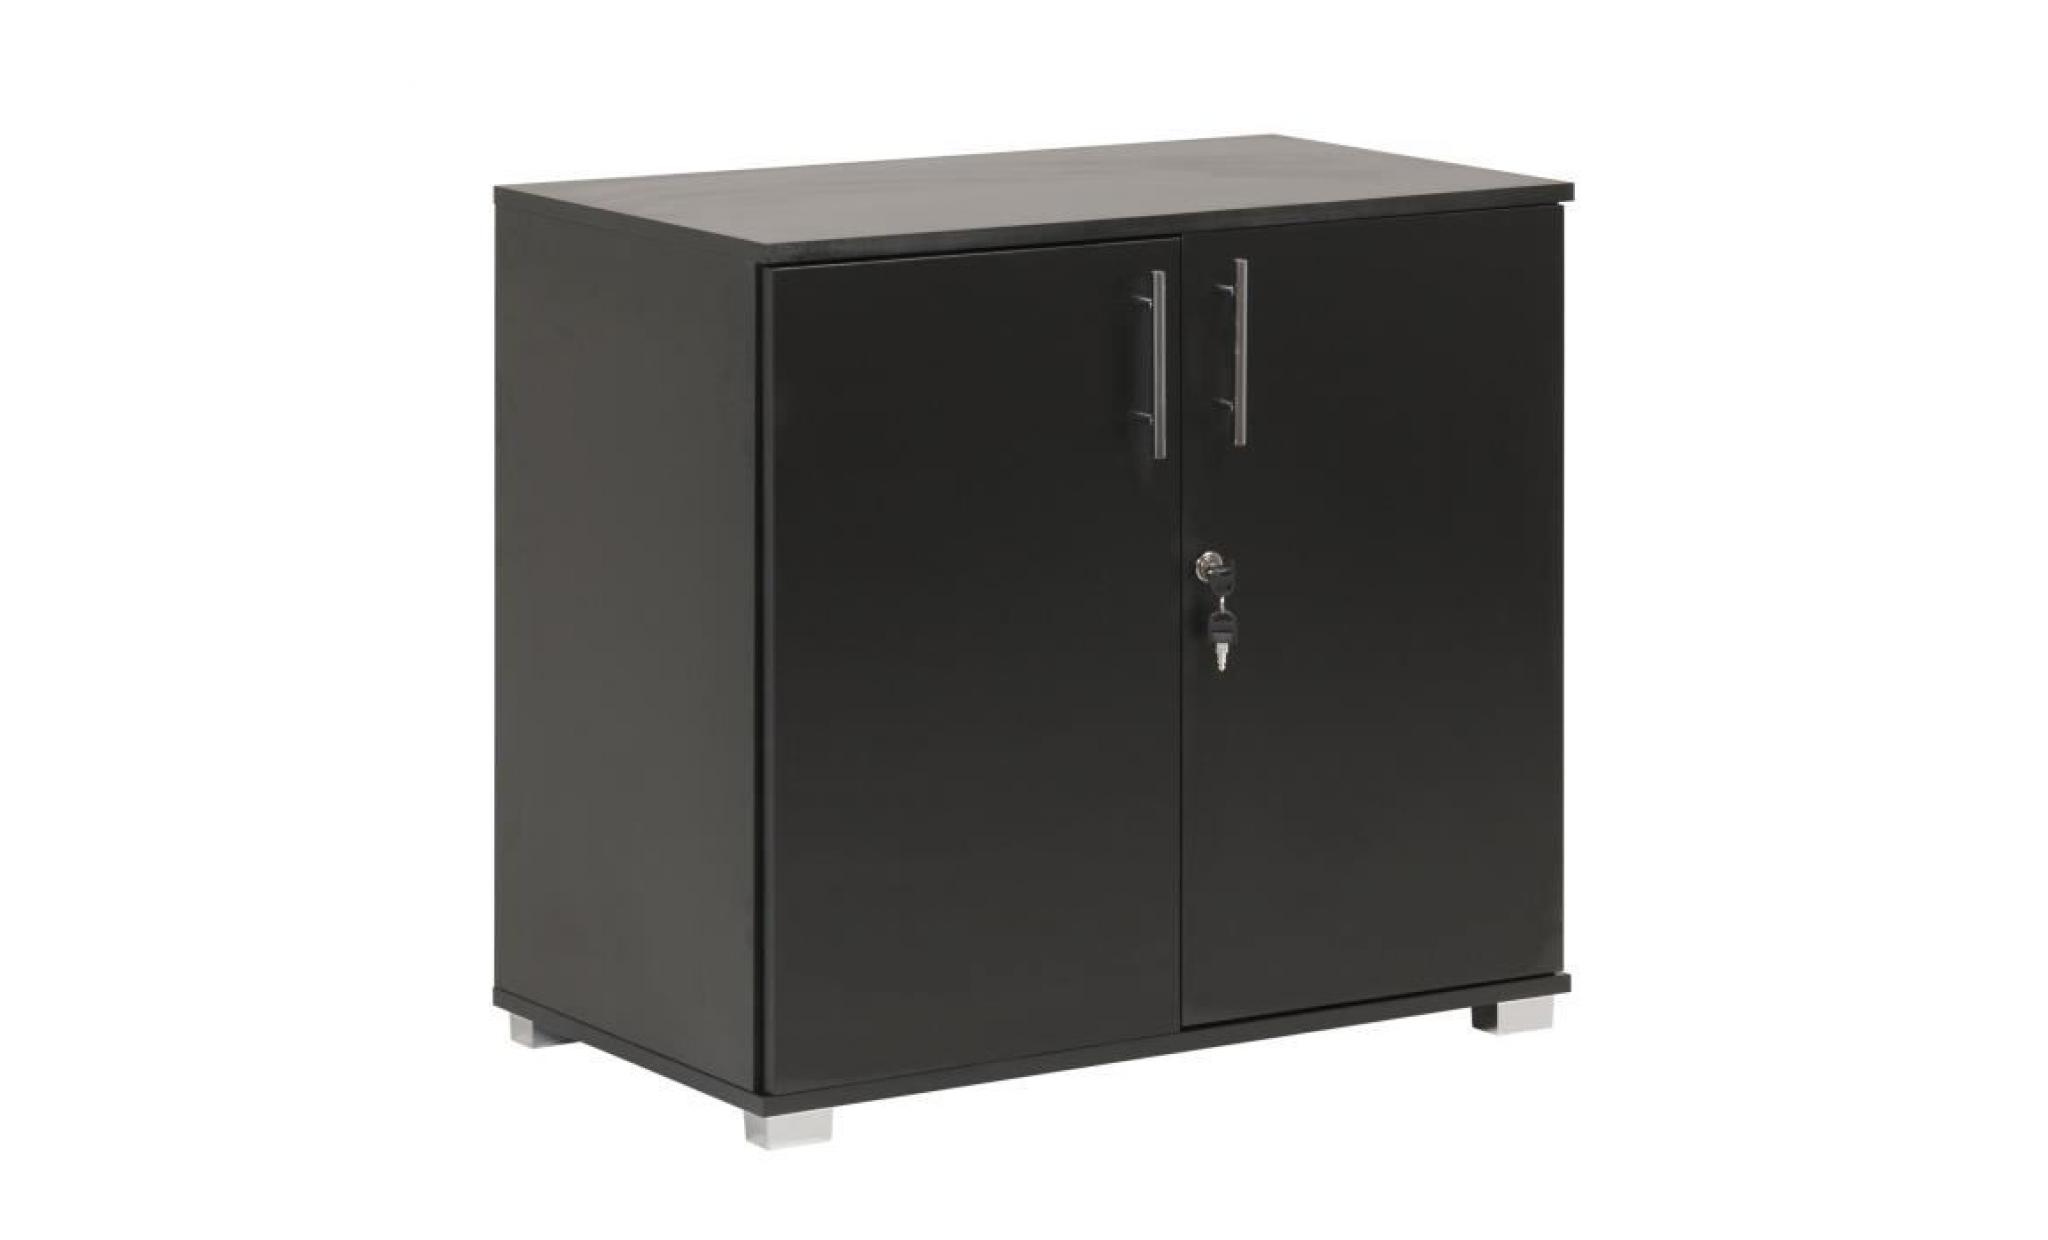 mmt sd iv07 black lockable desk extension unit filing storage cabinet